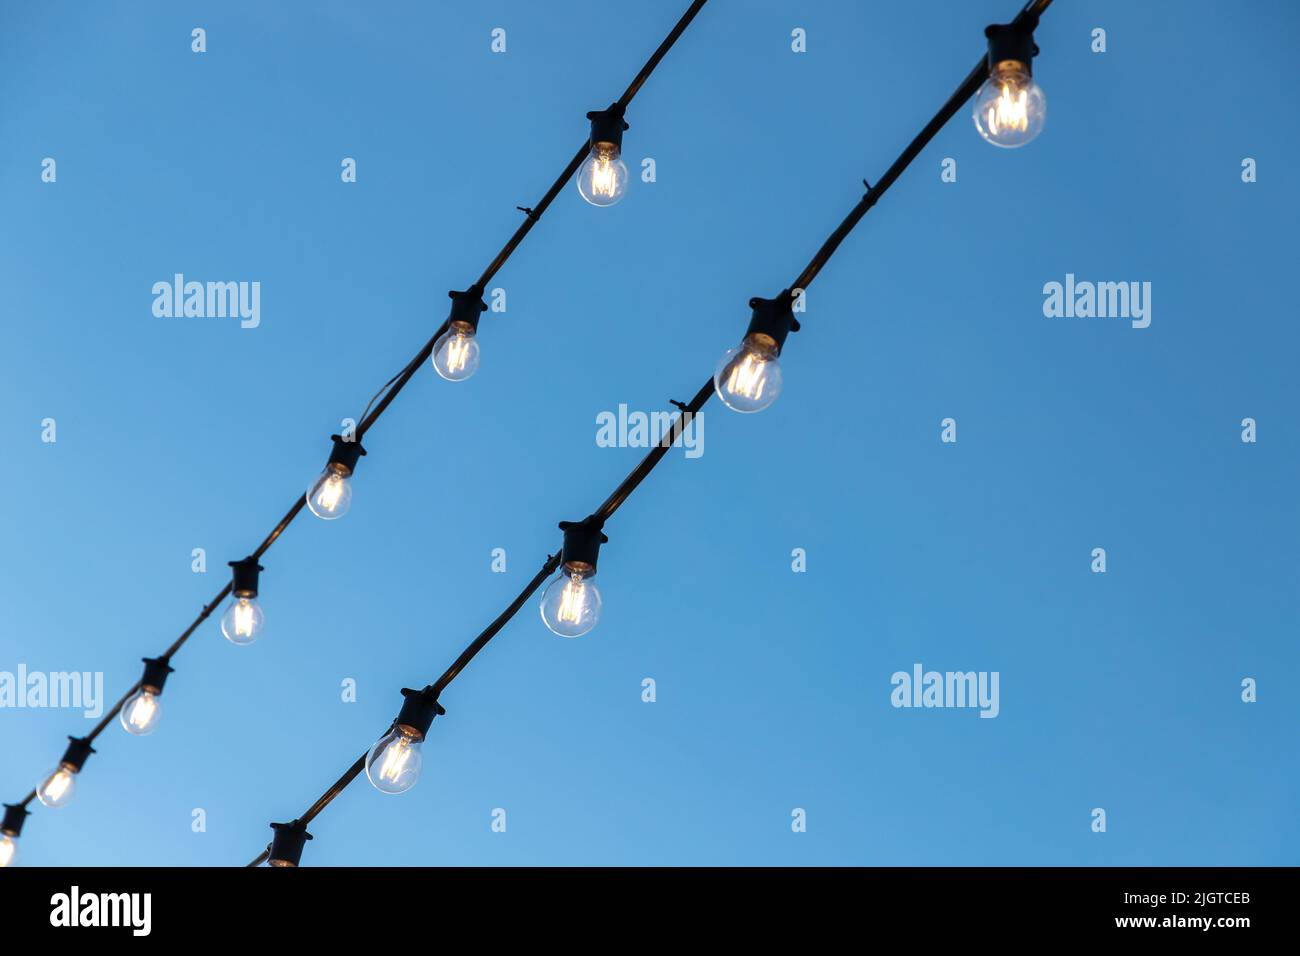 La ghirlanda di lampadine che pende sui cavi neri è sotto il cielo blu della sera Foto Stock